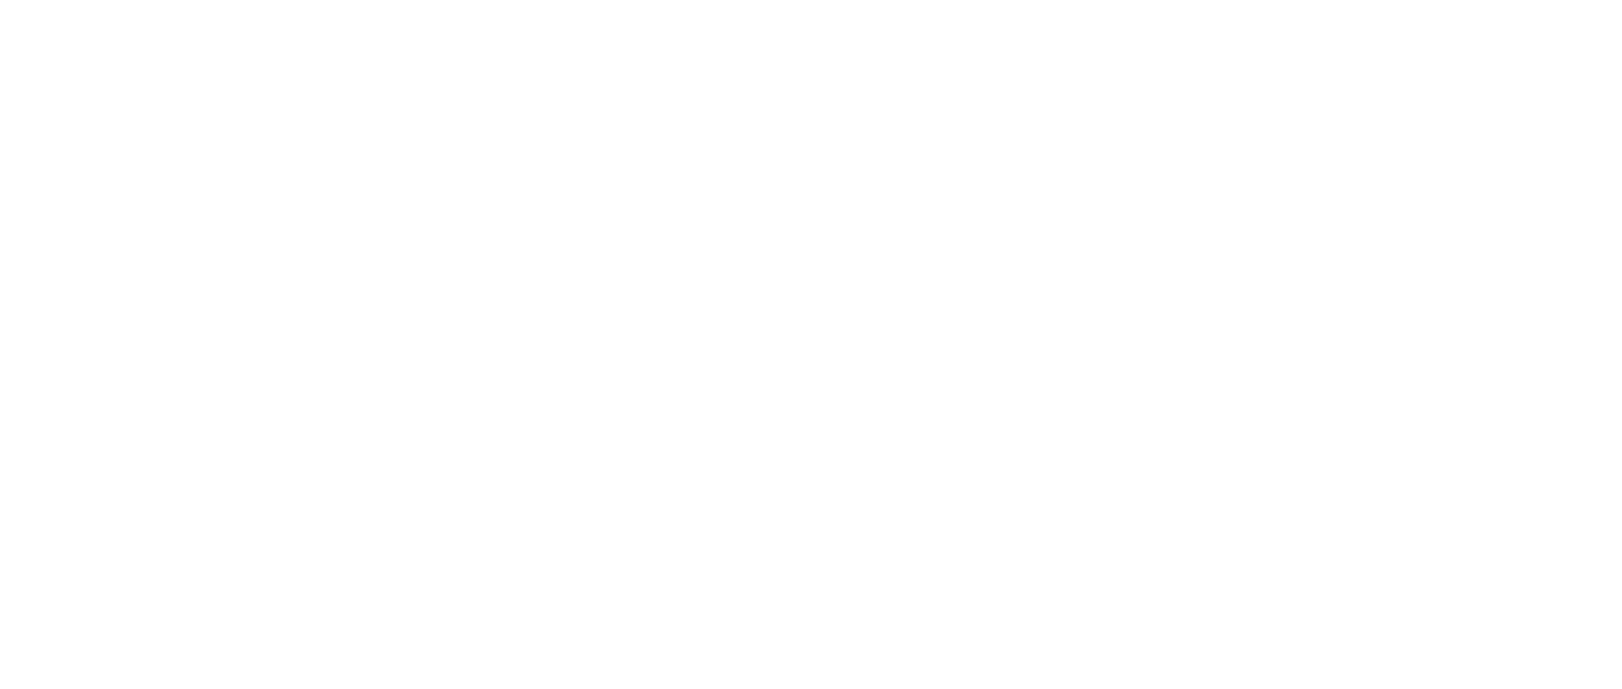 EVgo logo pour fonds sombres (PNG transparent)